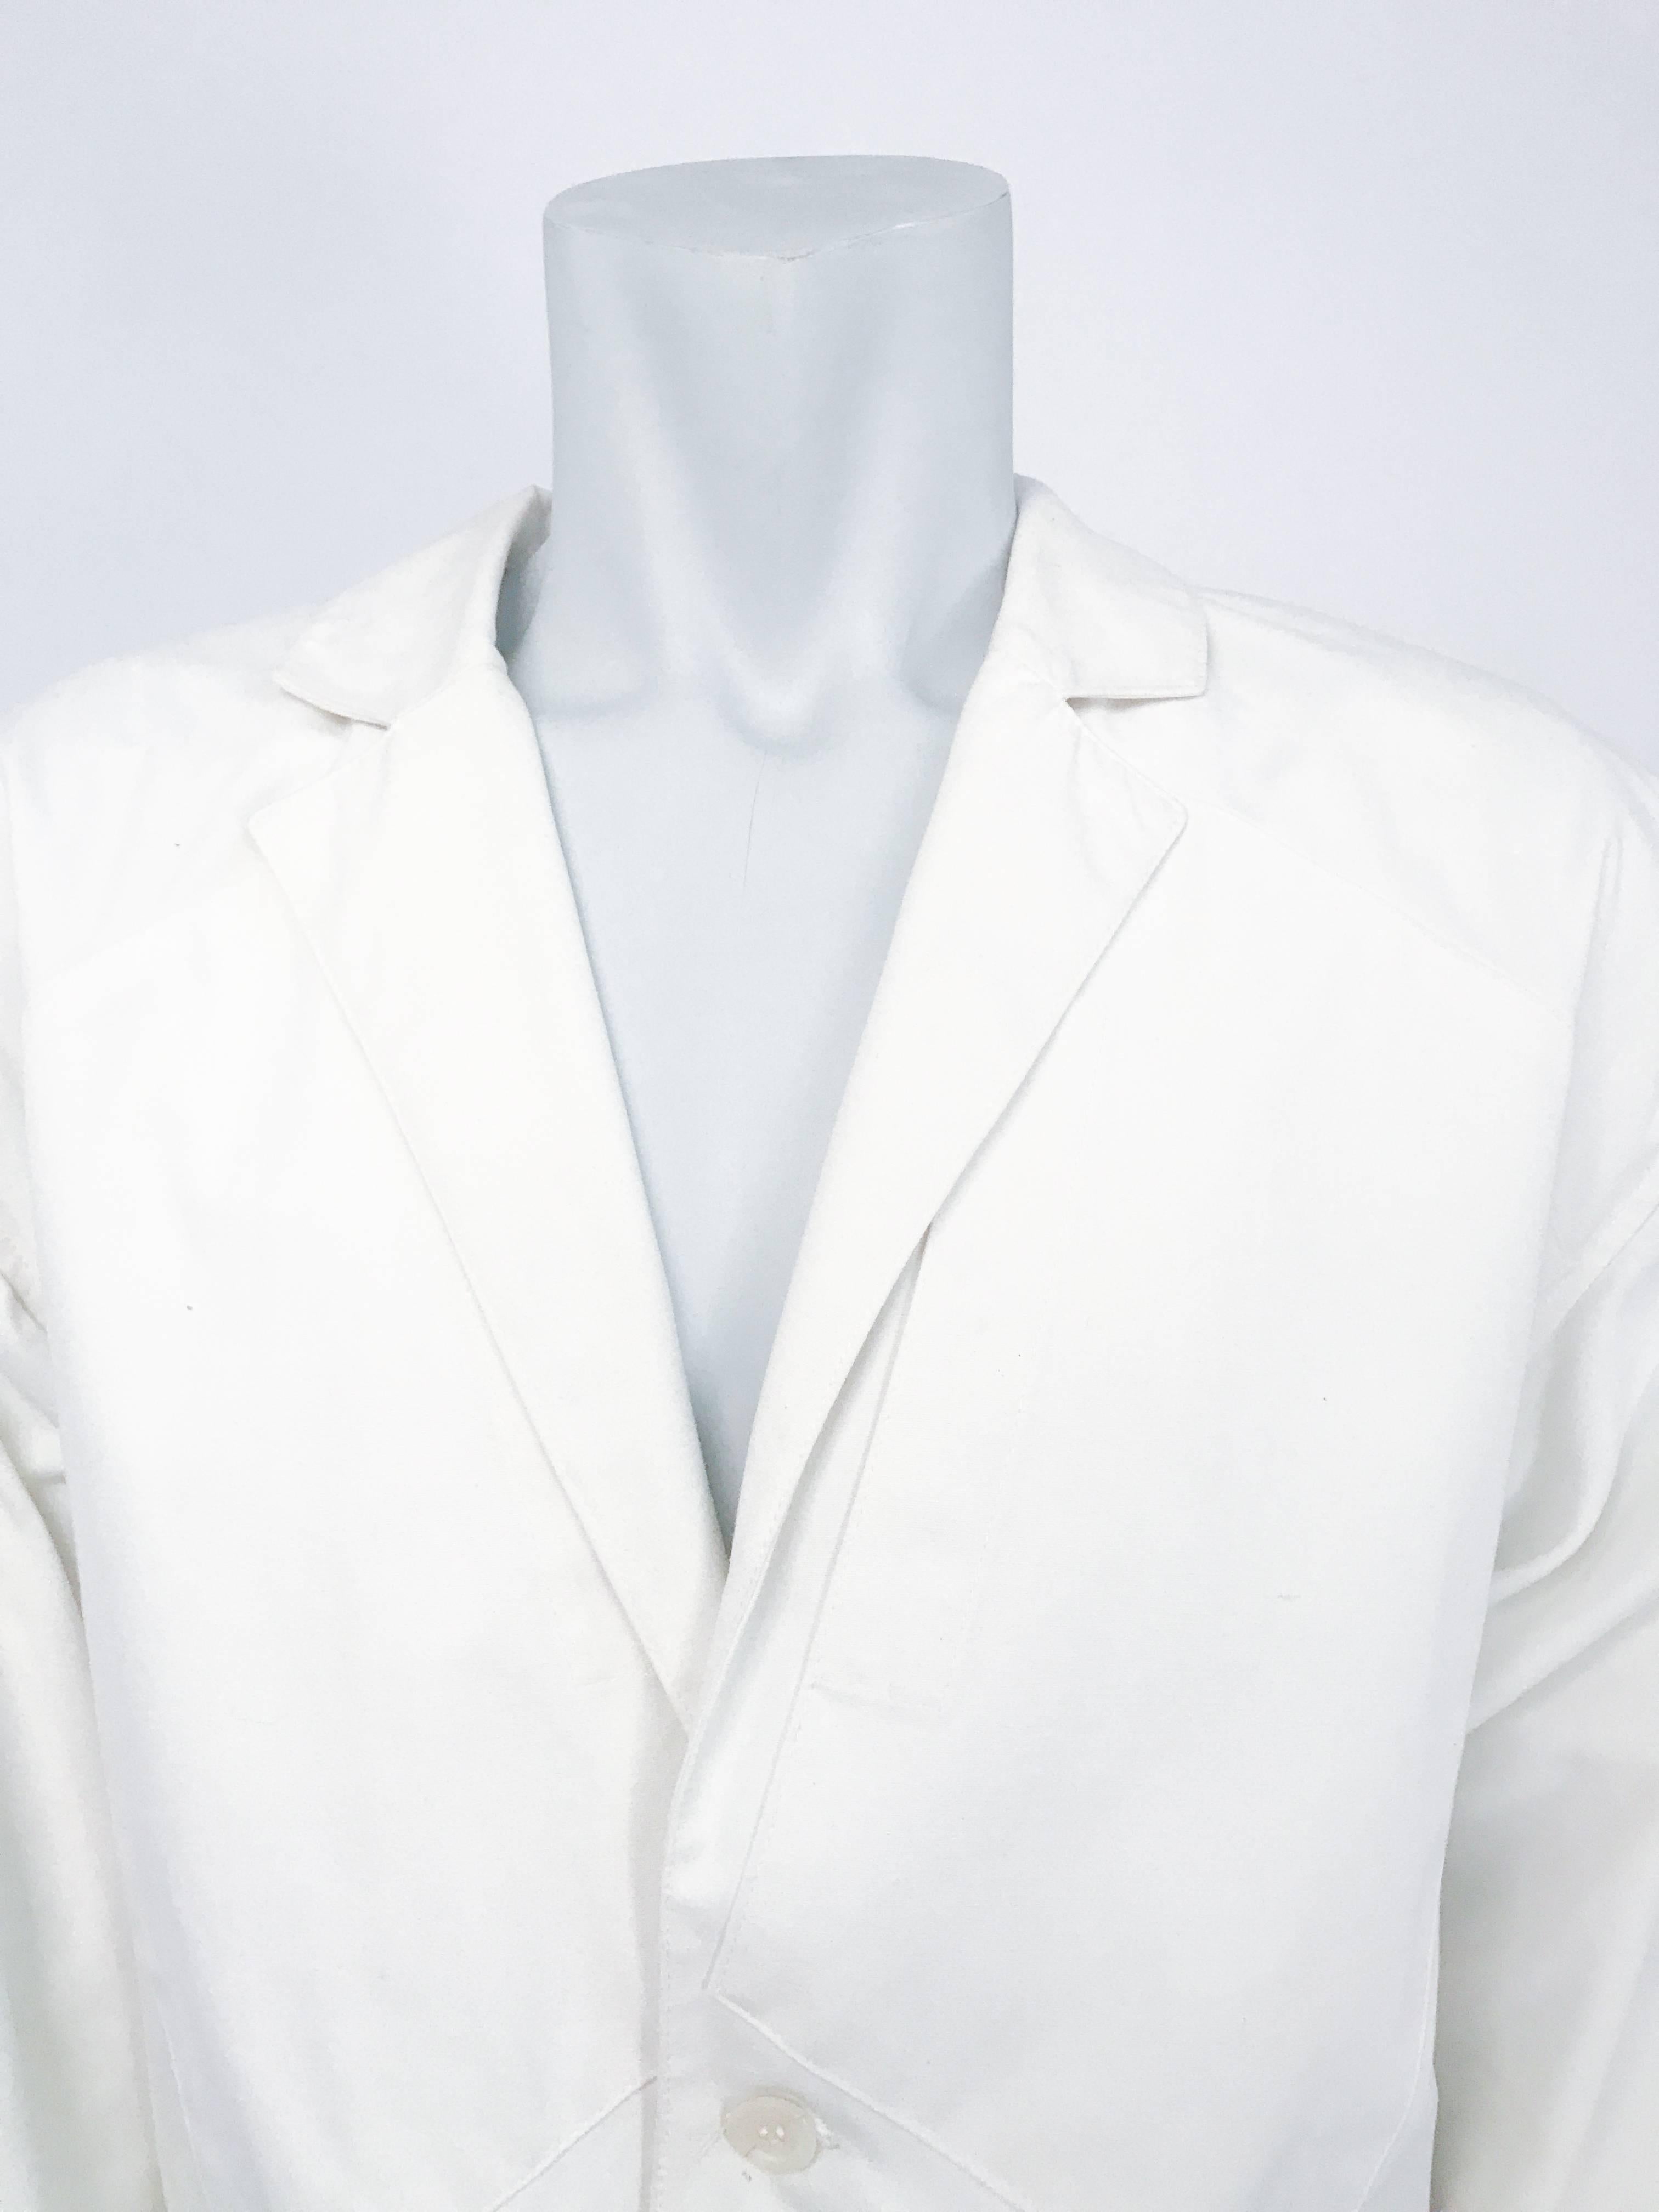 1980er Jahre Jean Charles De Castelbajac Weiße Jacke. Weiße Jacke mit stilistisch überdimensionierten Taschen.